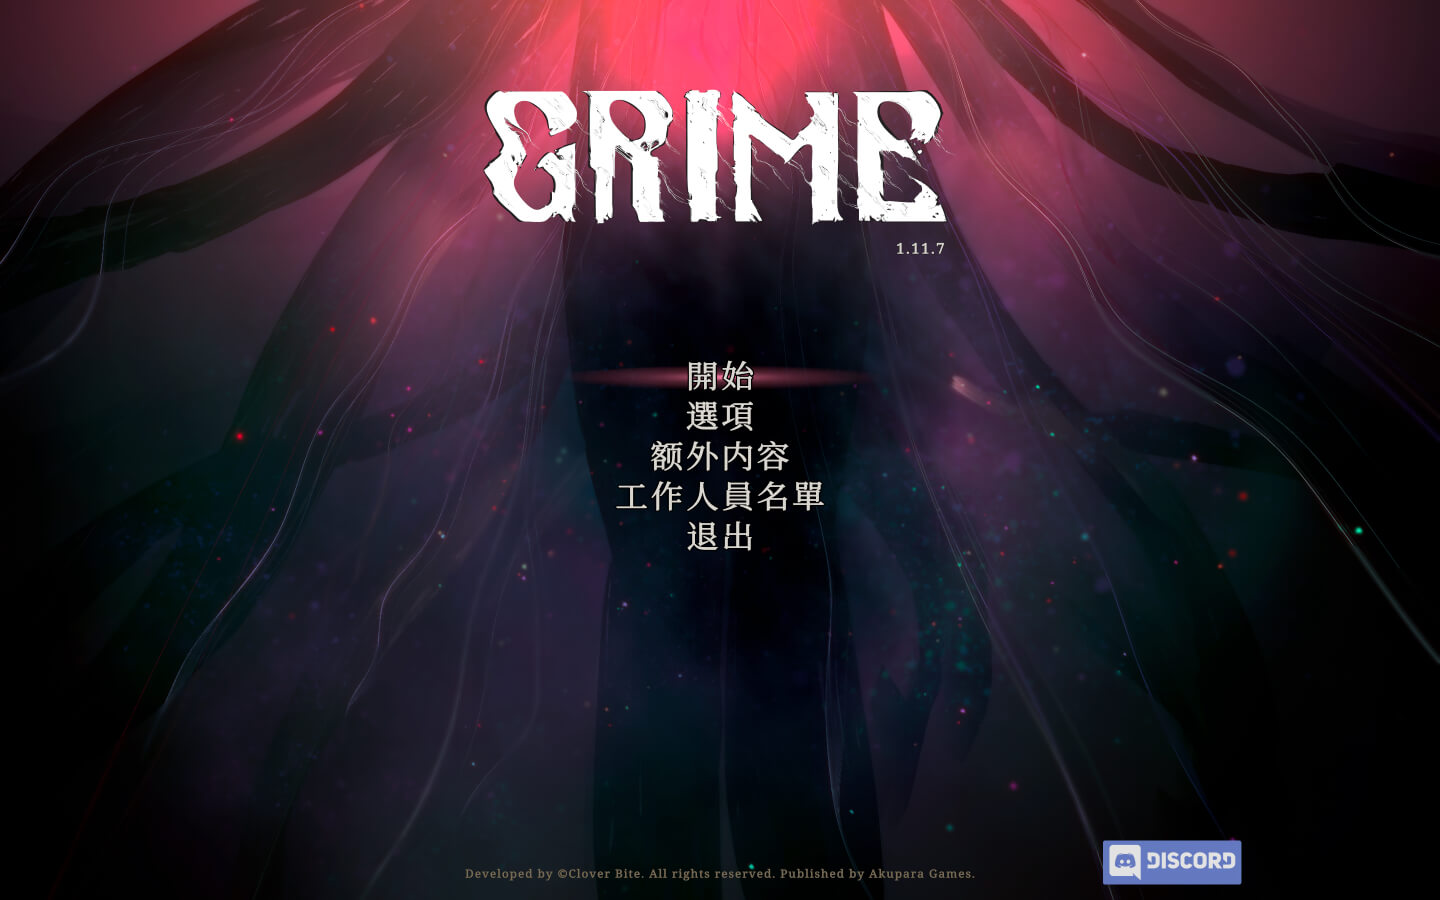 Mac游戏推荐 尘埃异变 GRIME for Mac 动作角色扮演游戏 苹果电脑